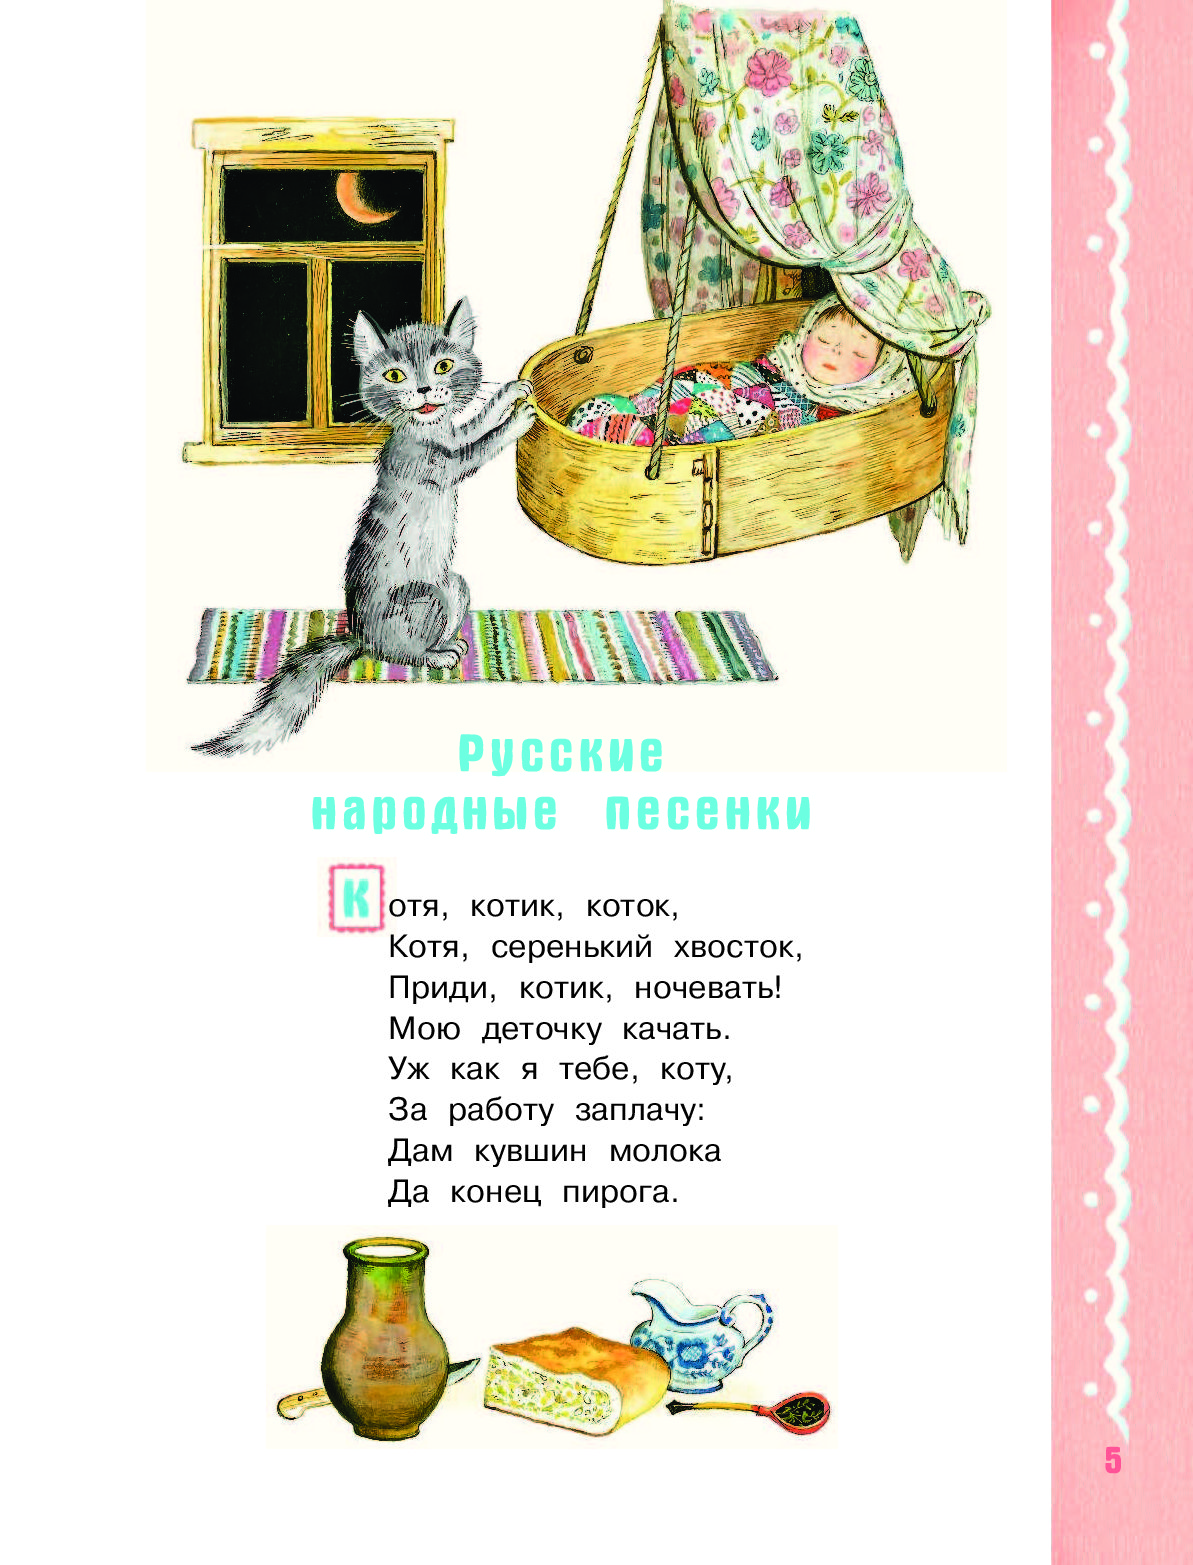 Русская колыбельная котенька коток